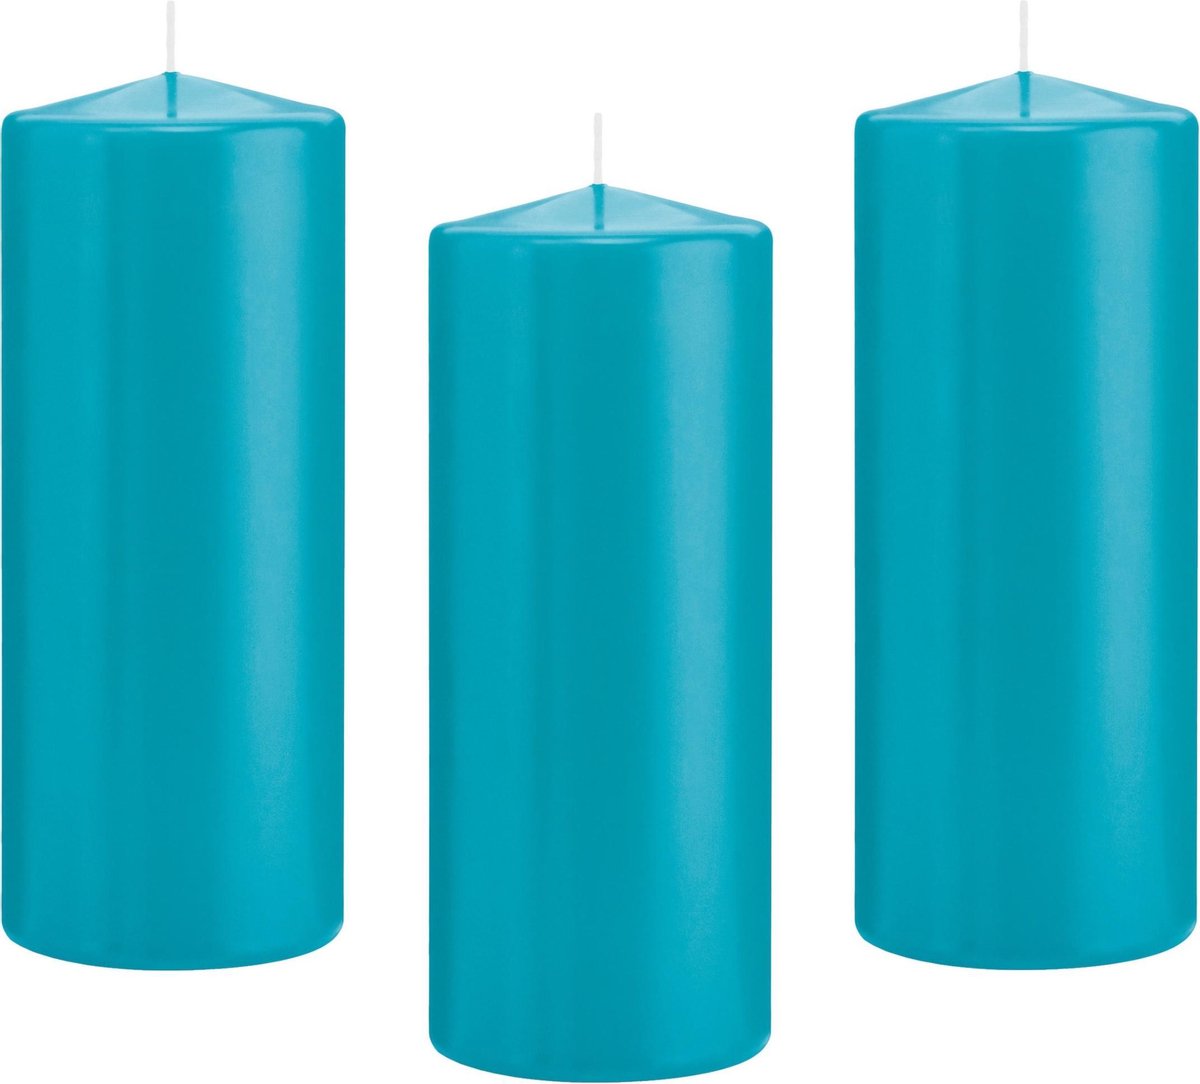 Trend Candles 8x Turquoise blauwe cilinderkaarsen stompkaarsen 8 x 20 cm 119 branduren Geurloze kaarsen turkoois blauw Stompkaarsen